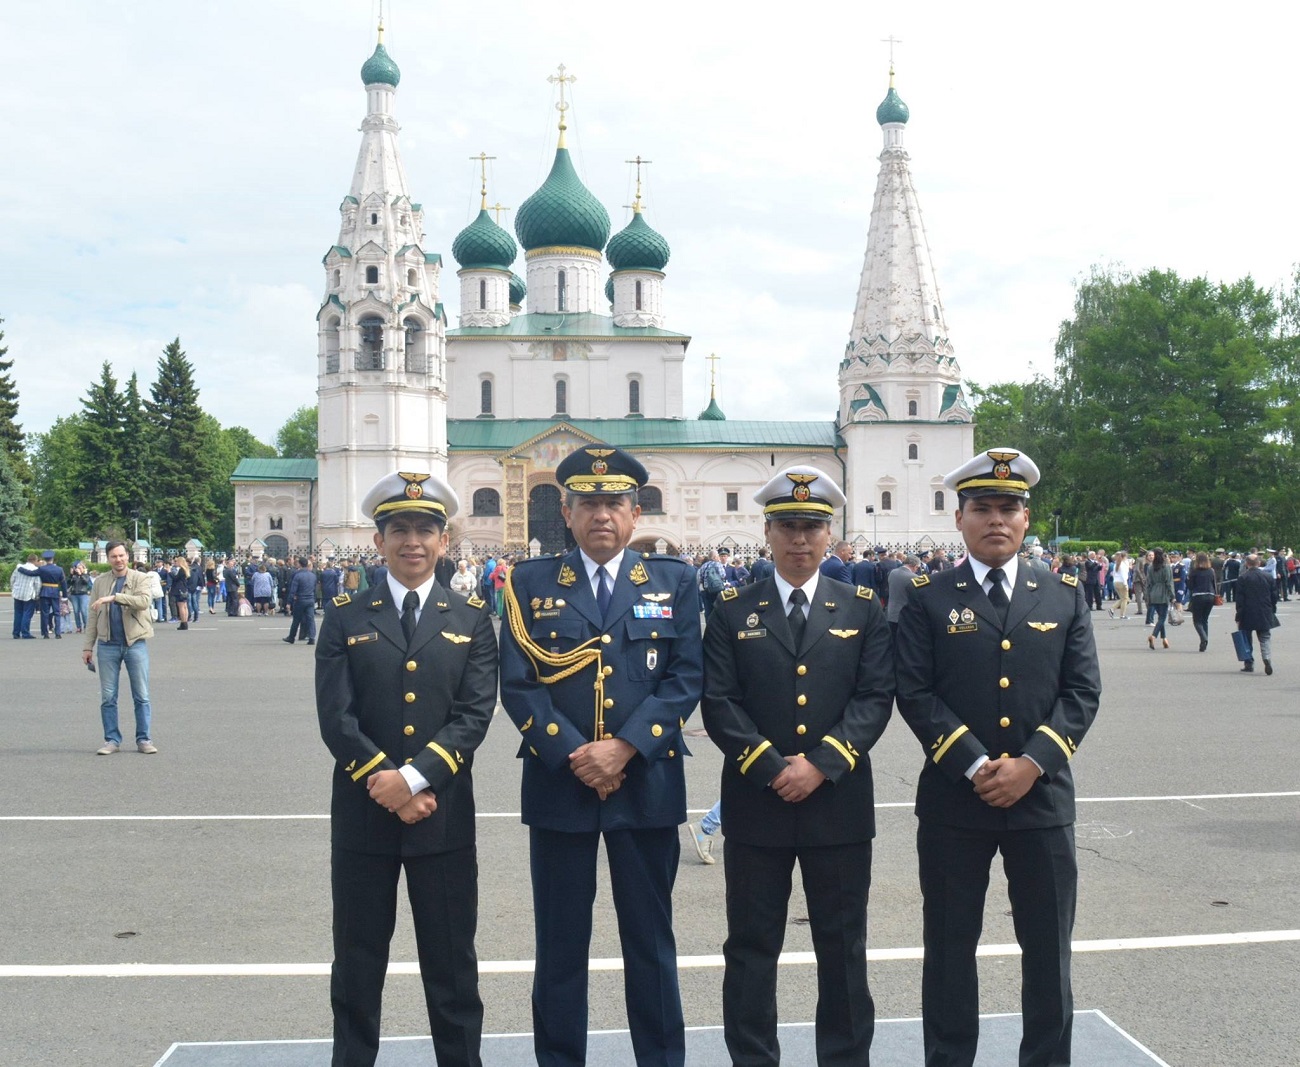 Militares peruanos durante la ceremonia de graduación en Yaroslavl. Fuente: Cortesía de Ricardo Zedano